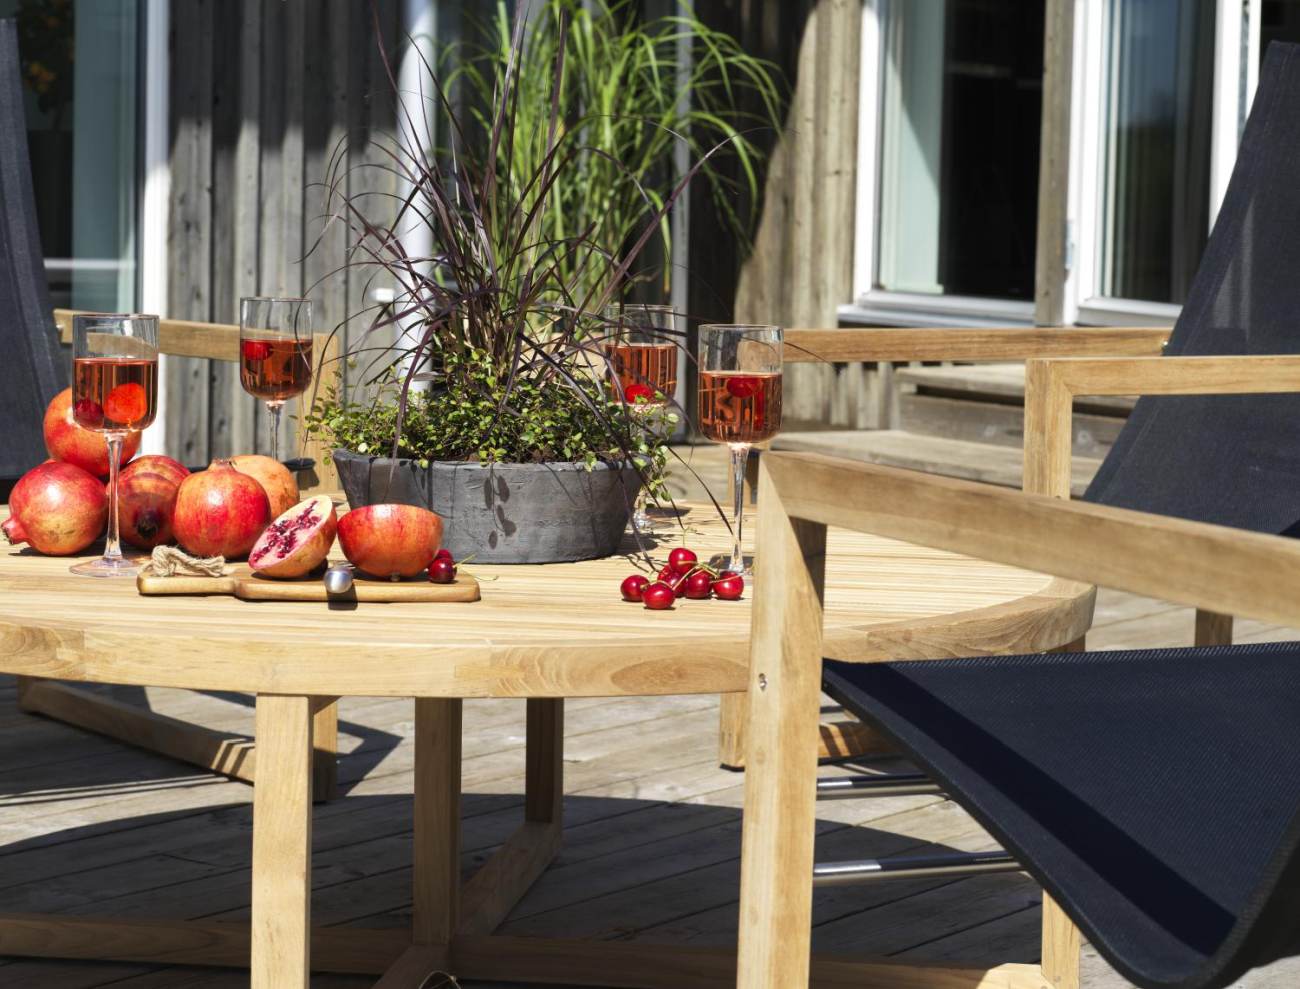 Der Gartencouchtisch Vevi überzeugt mit seinem modernen Design. Gefertigt wurde die Tischplatte aus Teakholz, welche einen natürlichen Farbton besitzt. Das Gestell ist auch aus Teakholz und hat eine natürliche Farbe. Der Tisch besitzt einen Durchmesser vo